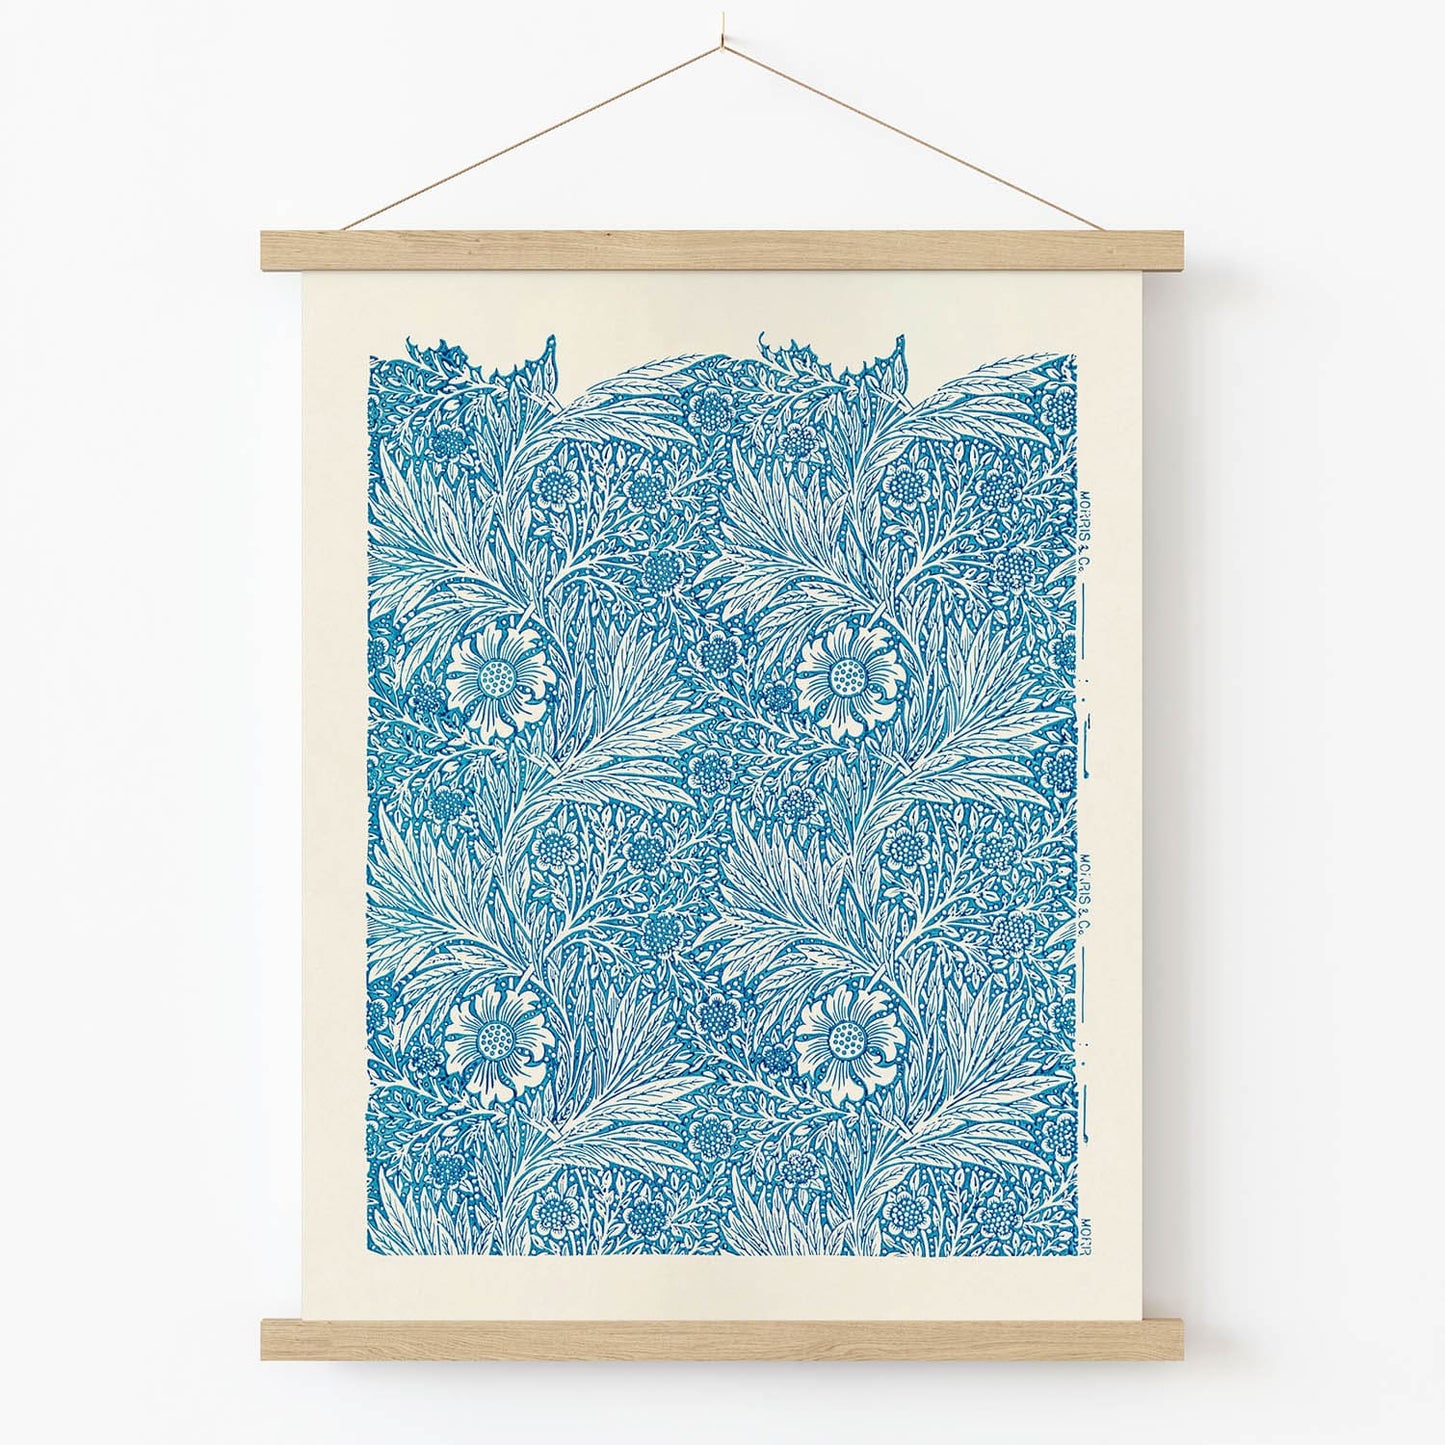 Boho Flower Art Print in Wood Hanger Frame on Wall